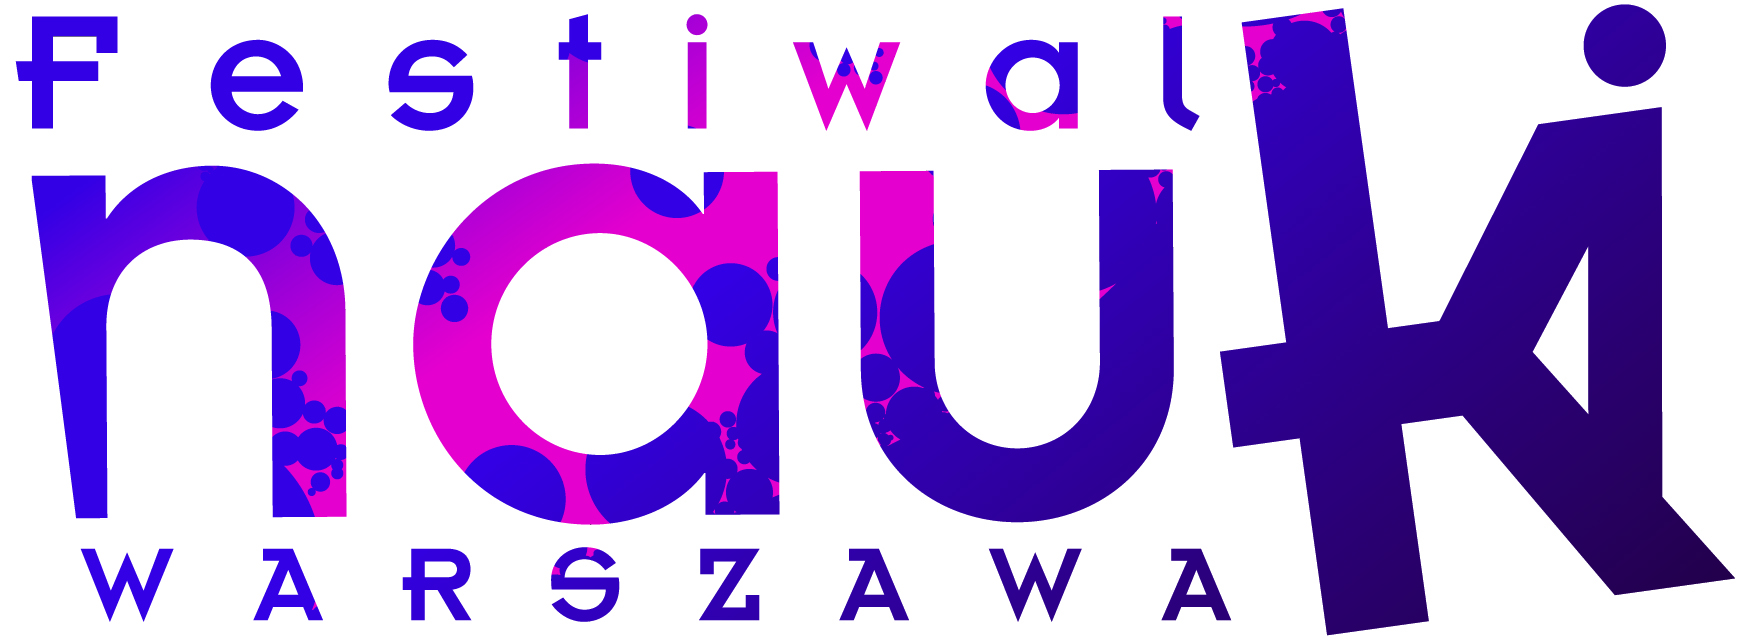 Festiwal Nauki Warszawa - logo